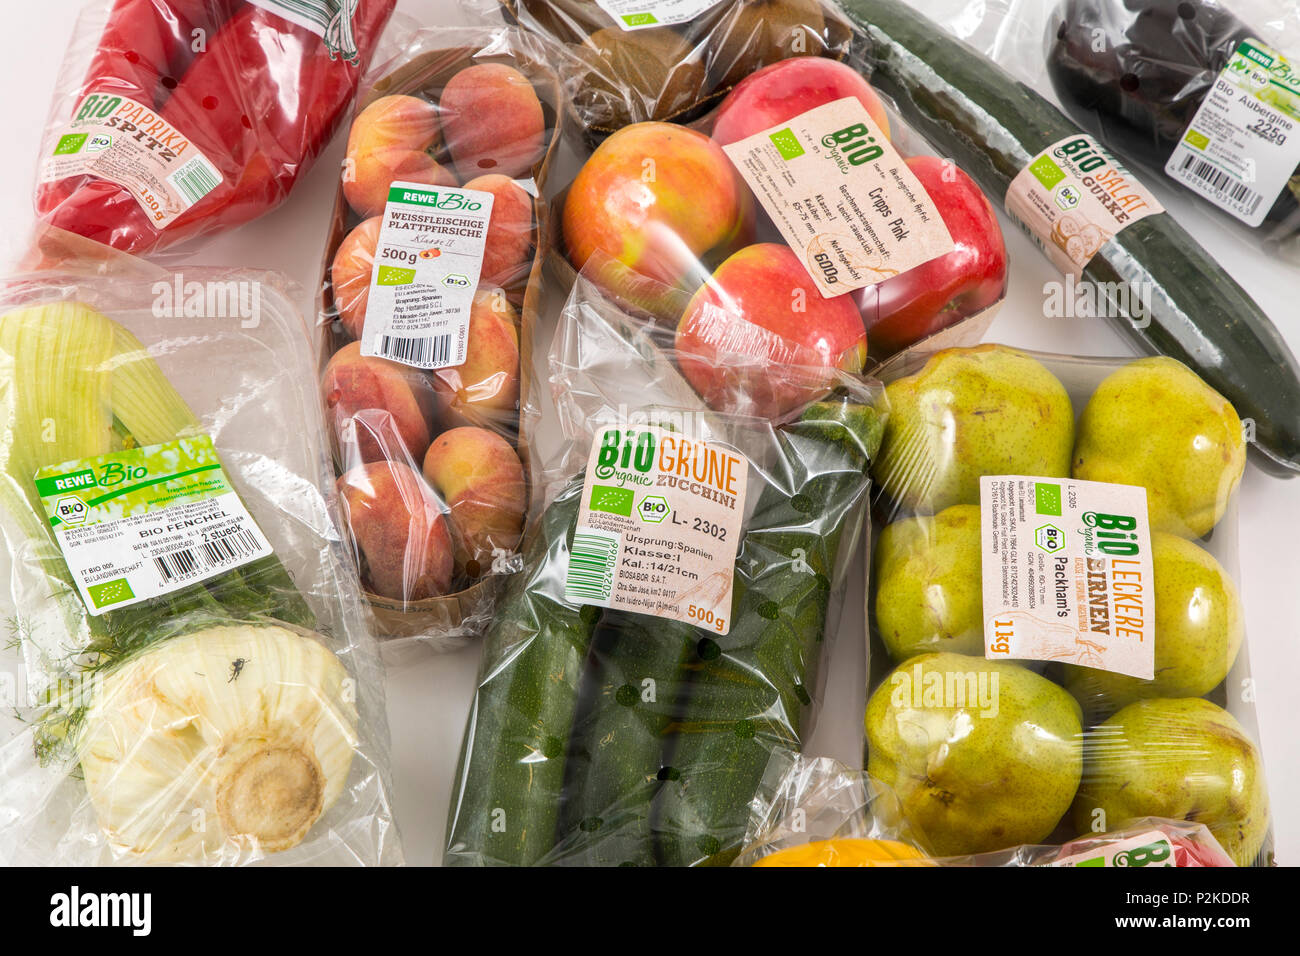 Il cibo fresco, cibo organico, ortaggi, frutta, ciascuno singolarmente confezionati in plastica tutto il cibo è disponibile nello stesso supermercato anche wi Foto Stock